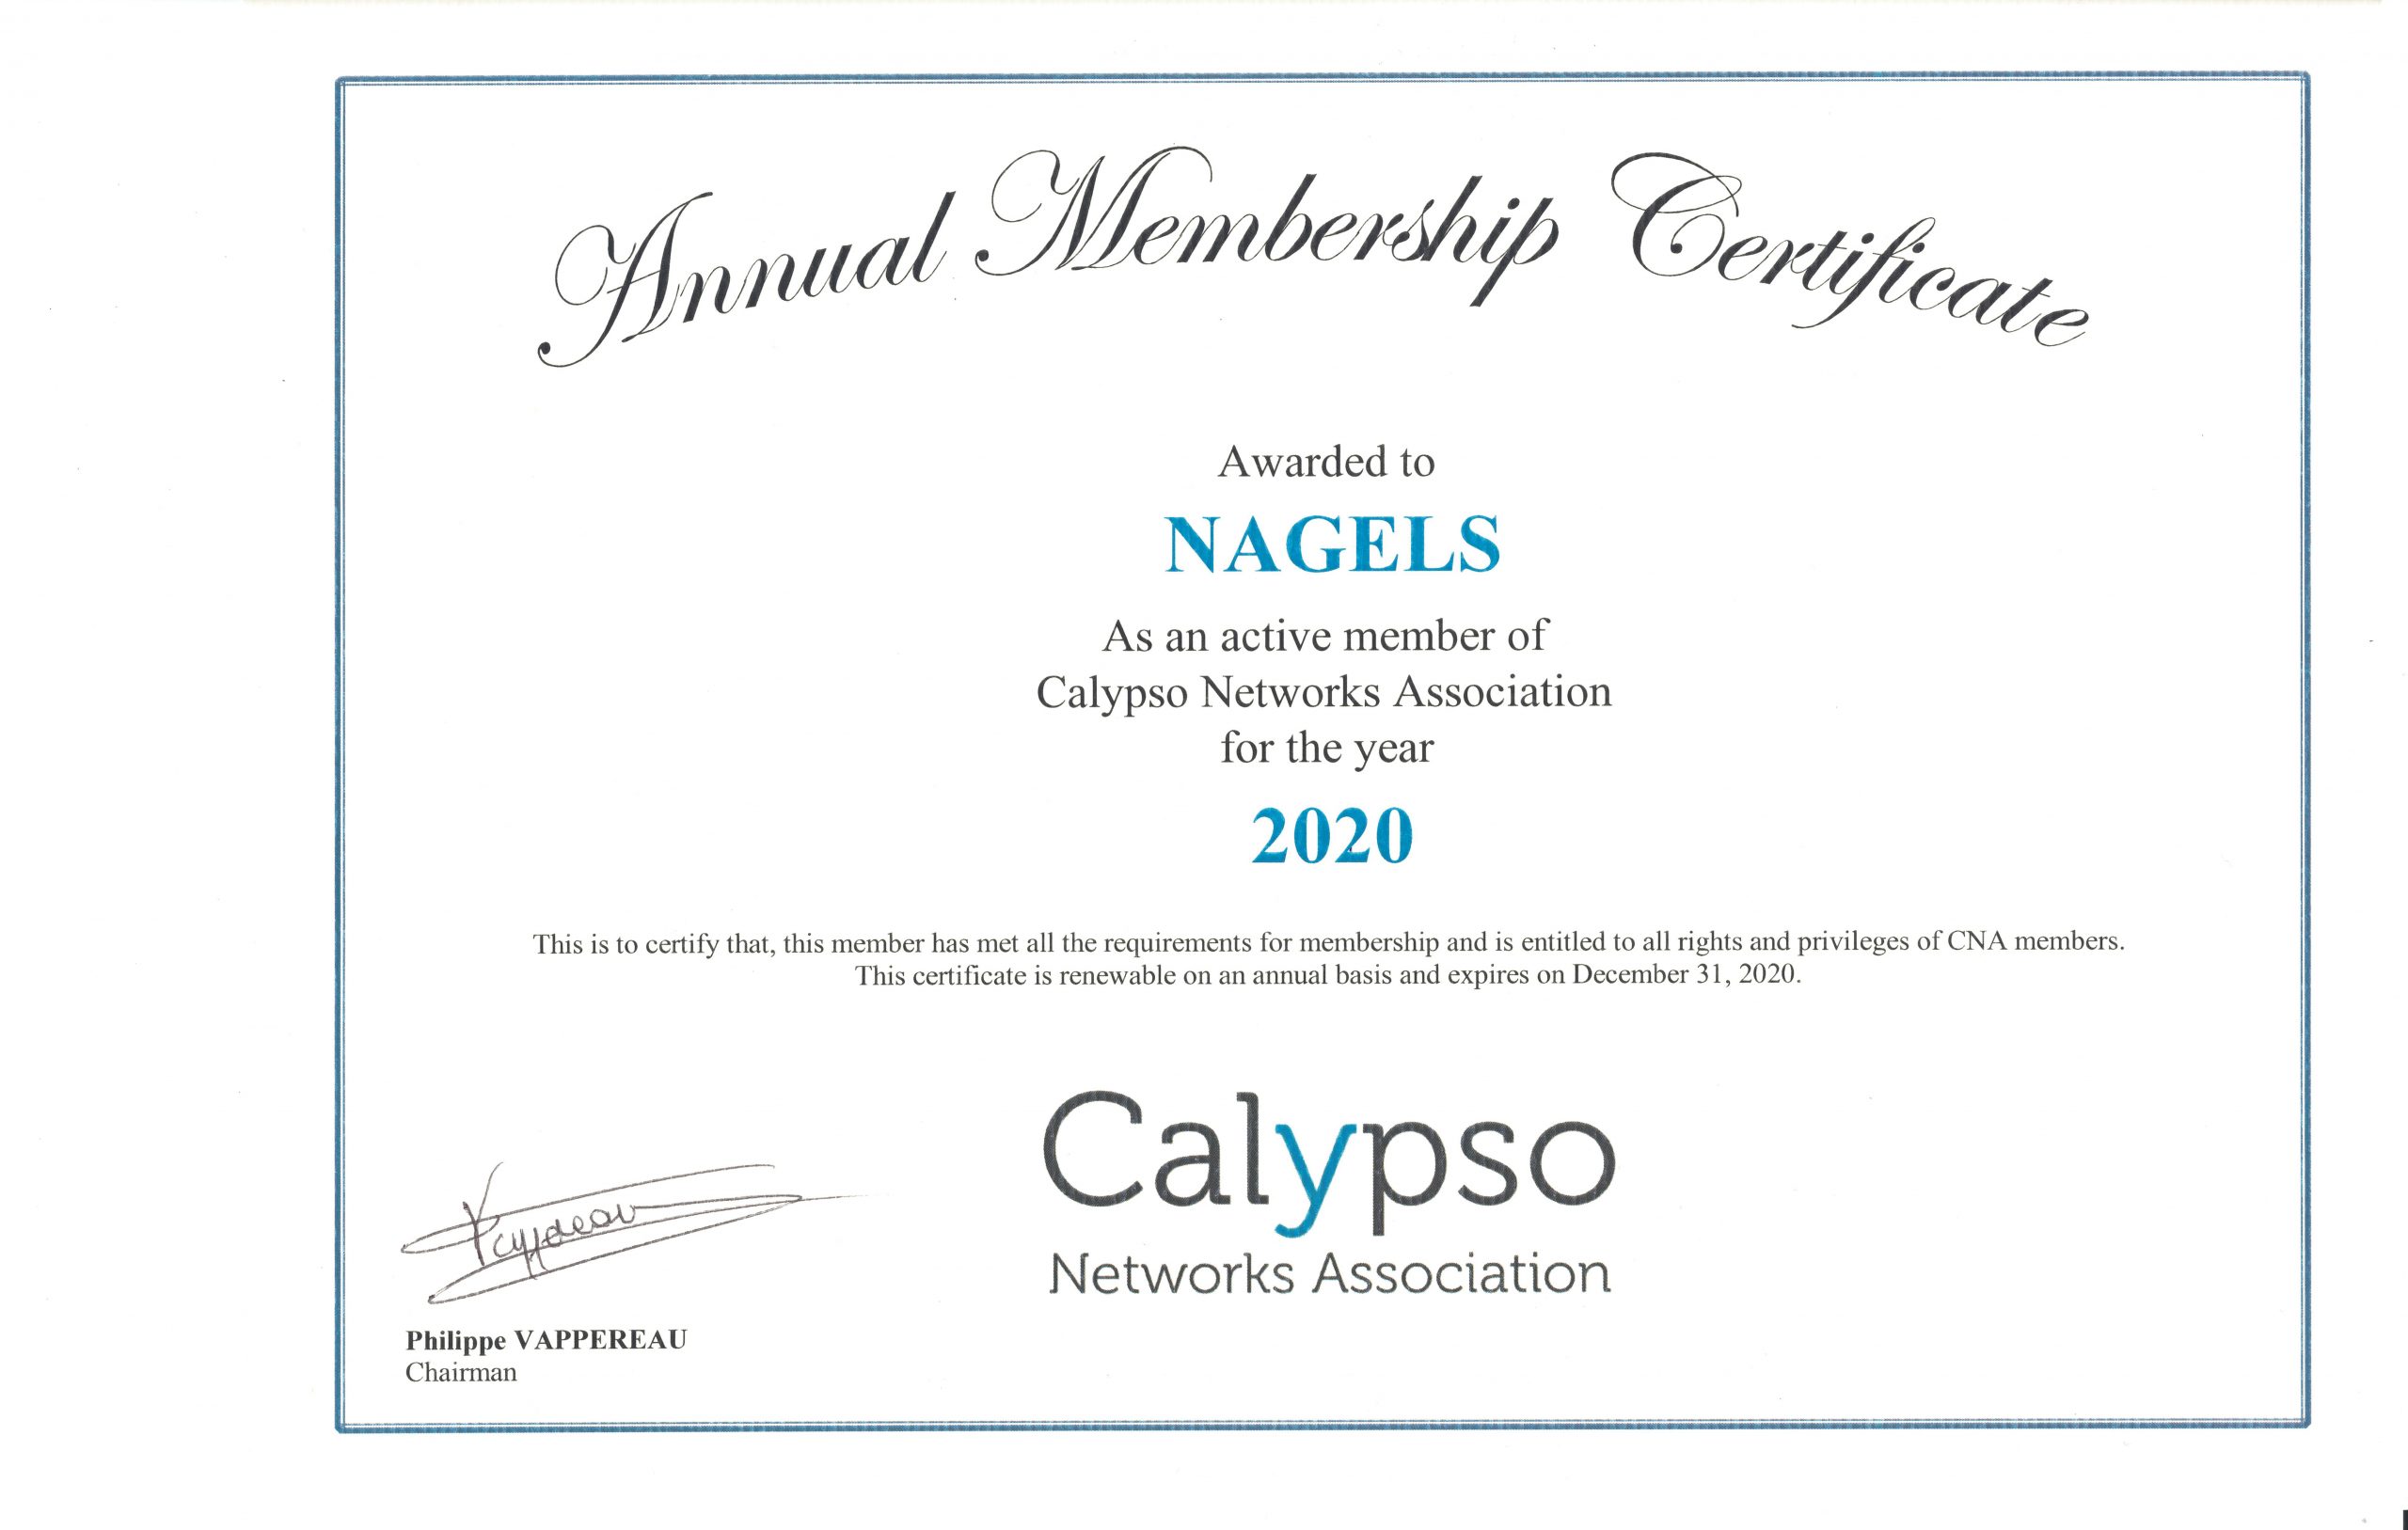 Calypso Networks Association 2020